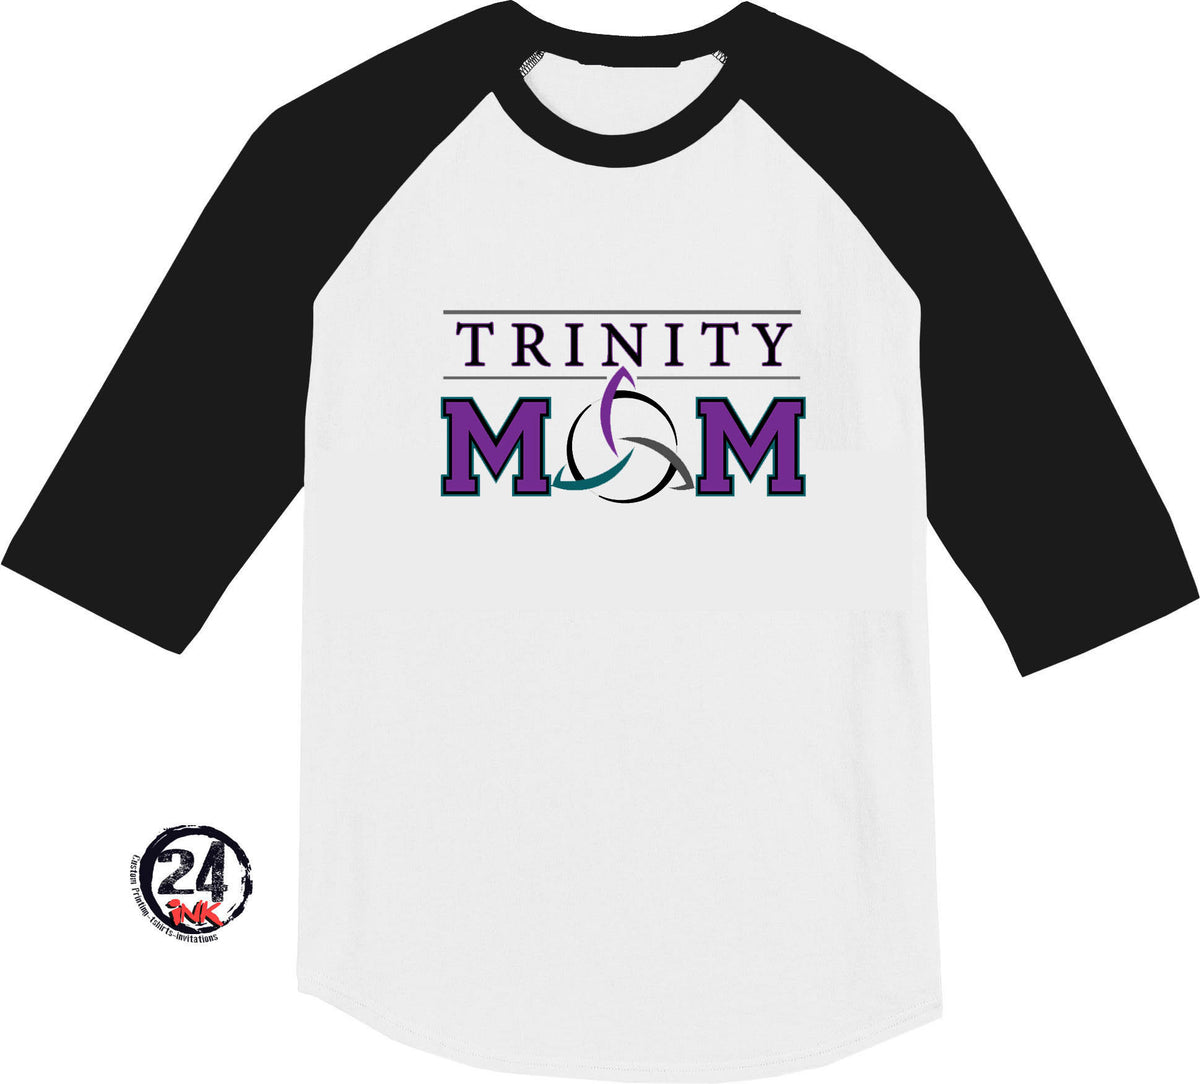 Trinity Mom raglan shirt